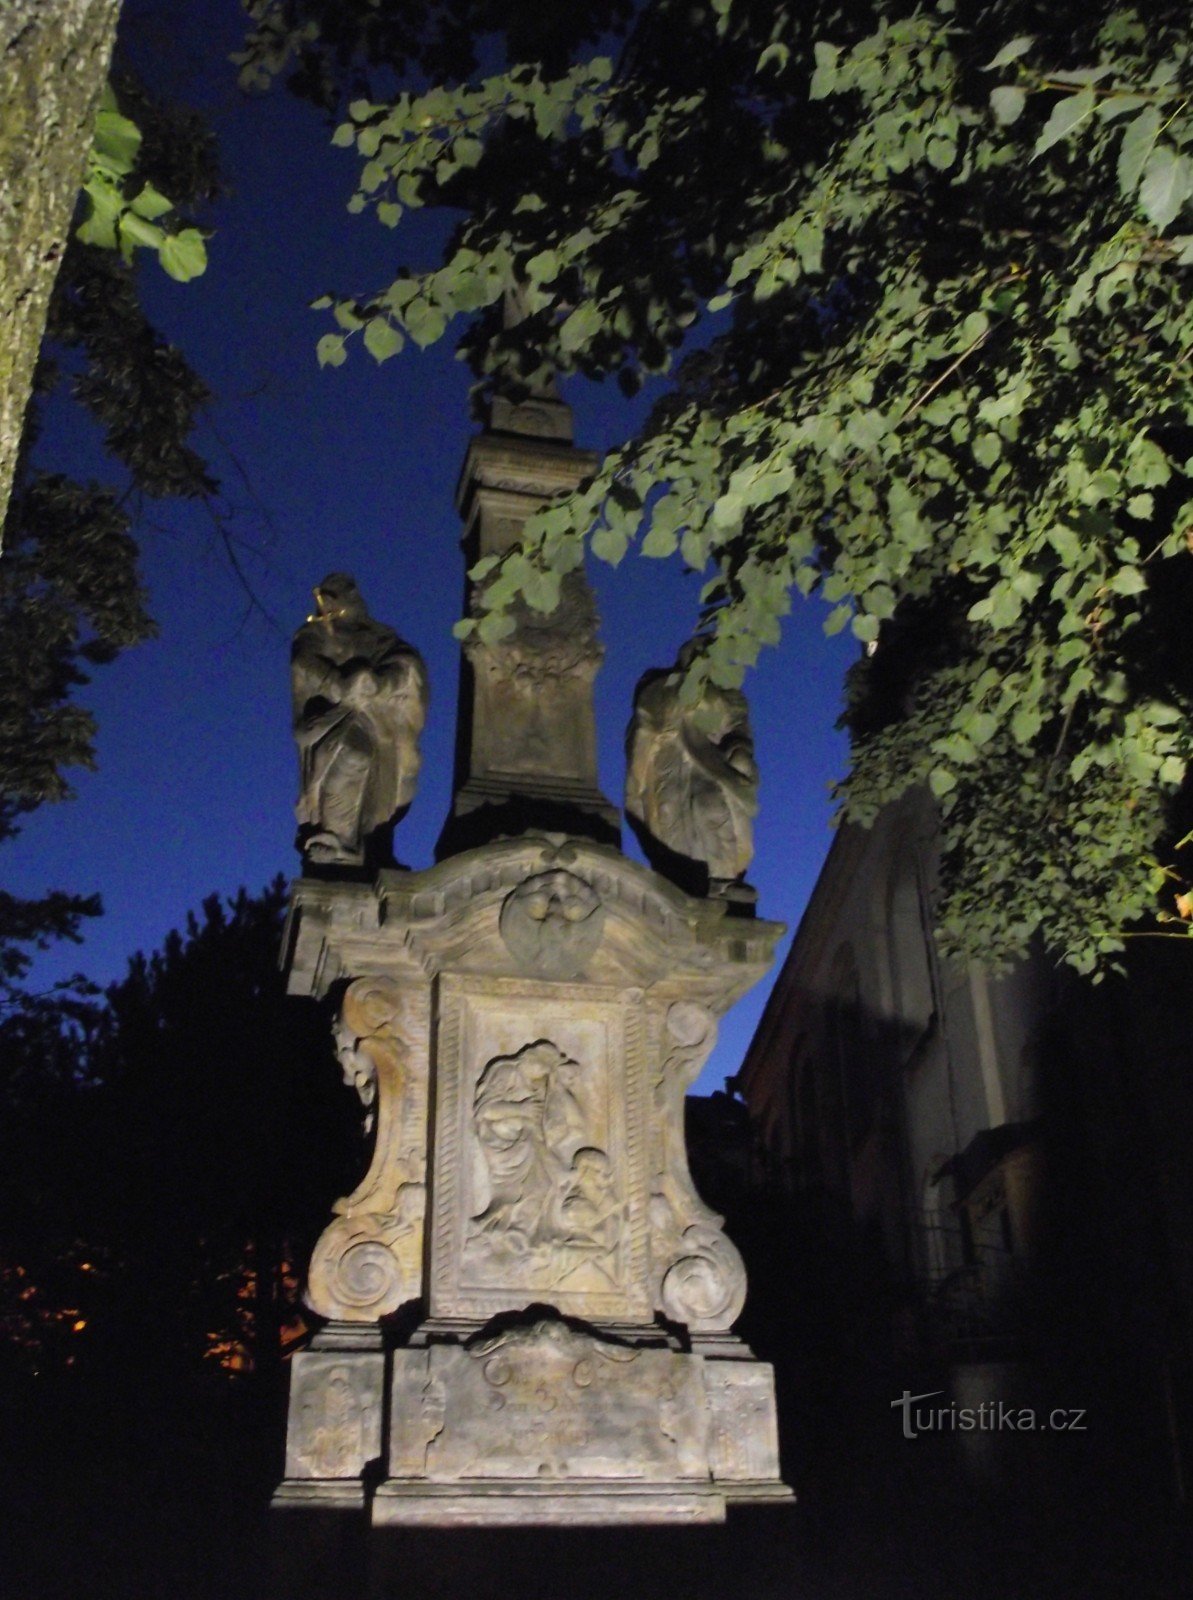 sculptures at night